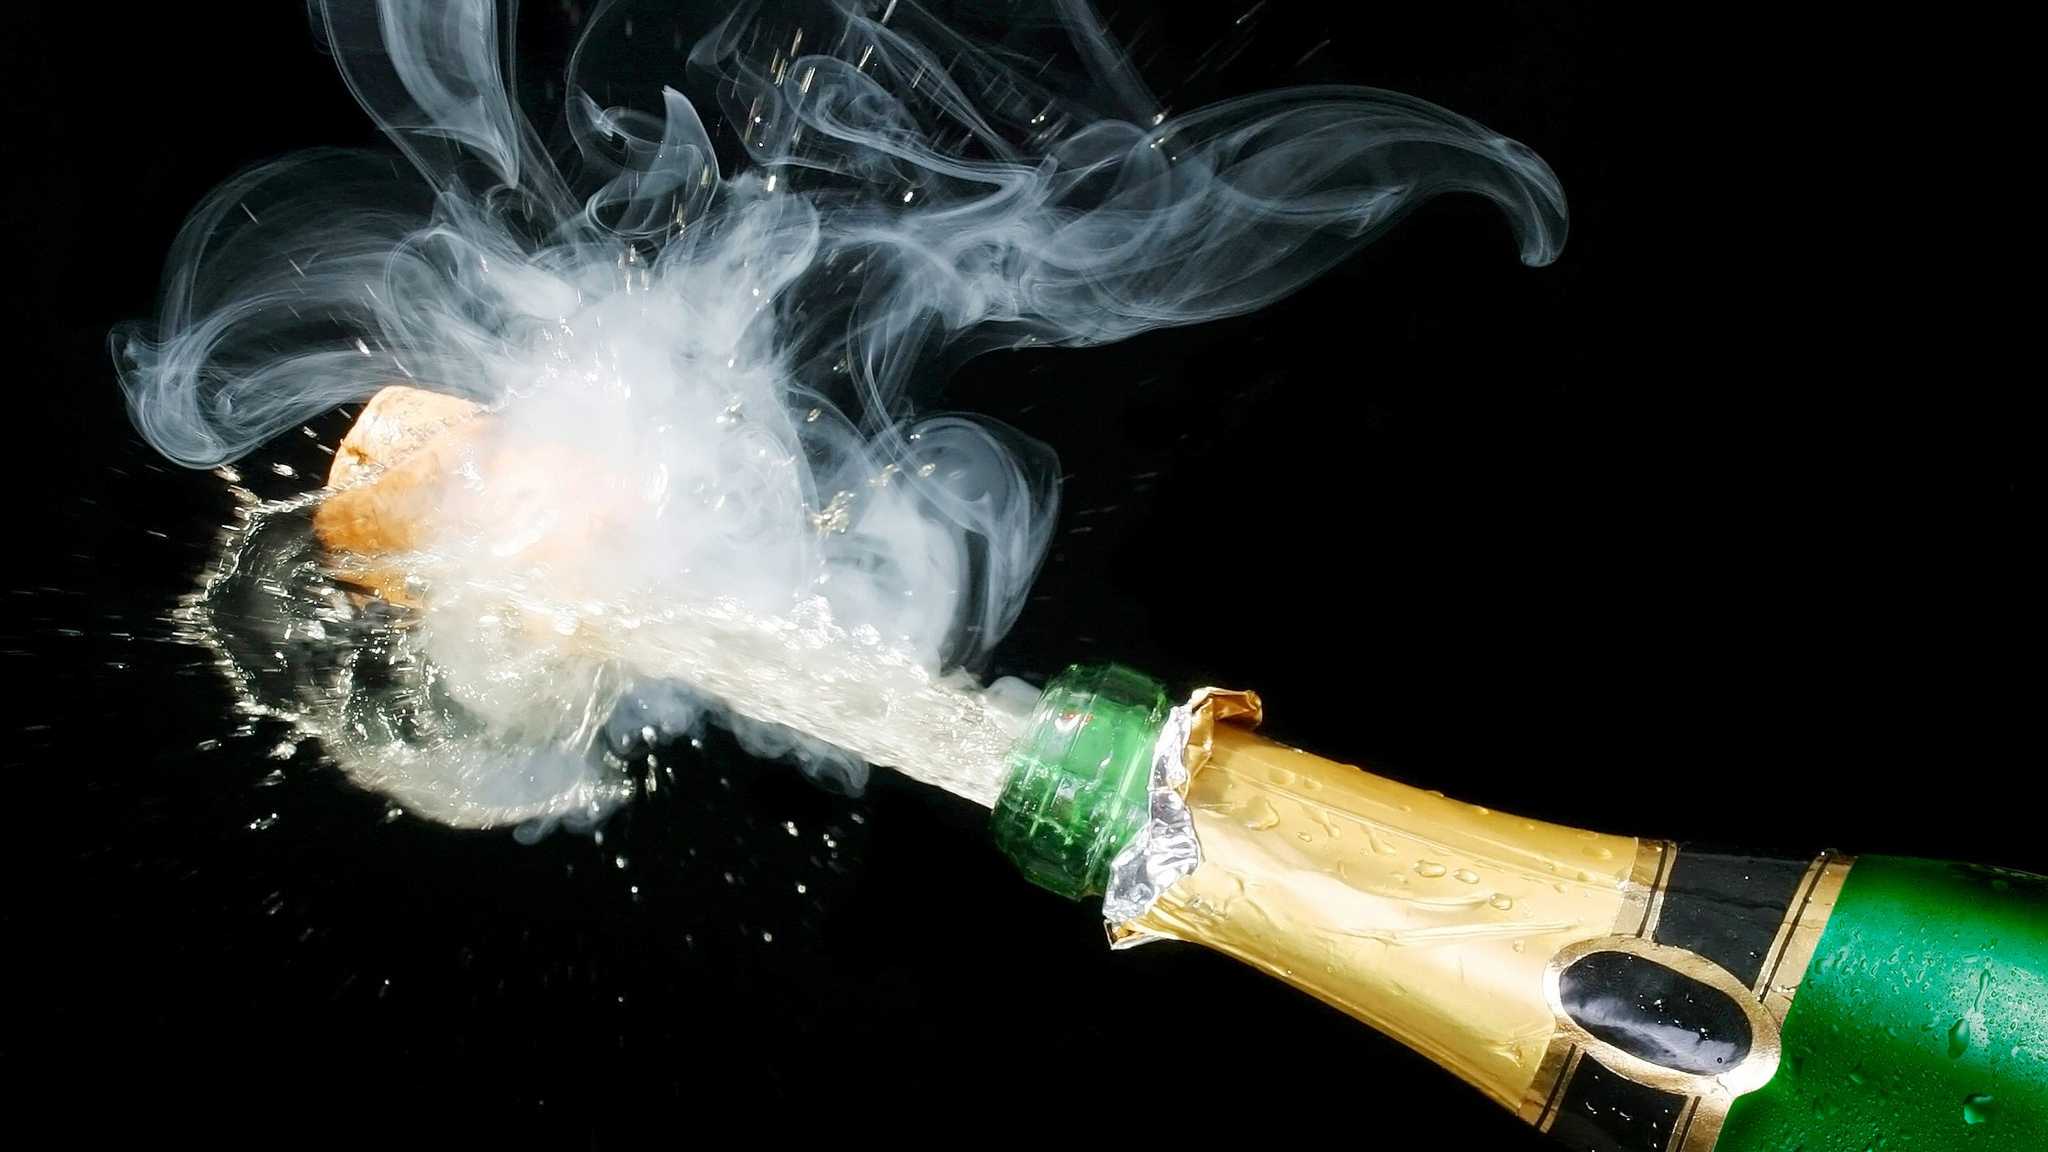 Цвет «дымки» от шампанского объяснили криогенными процессами